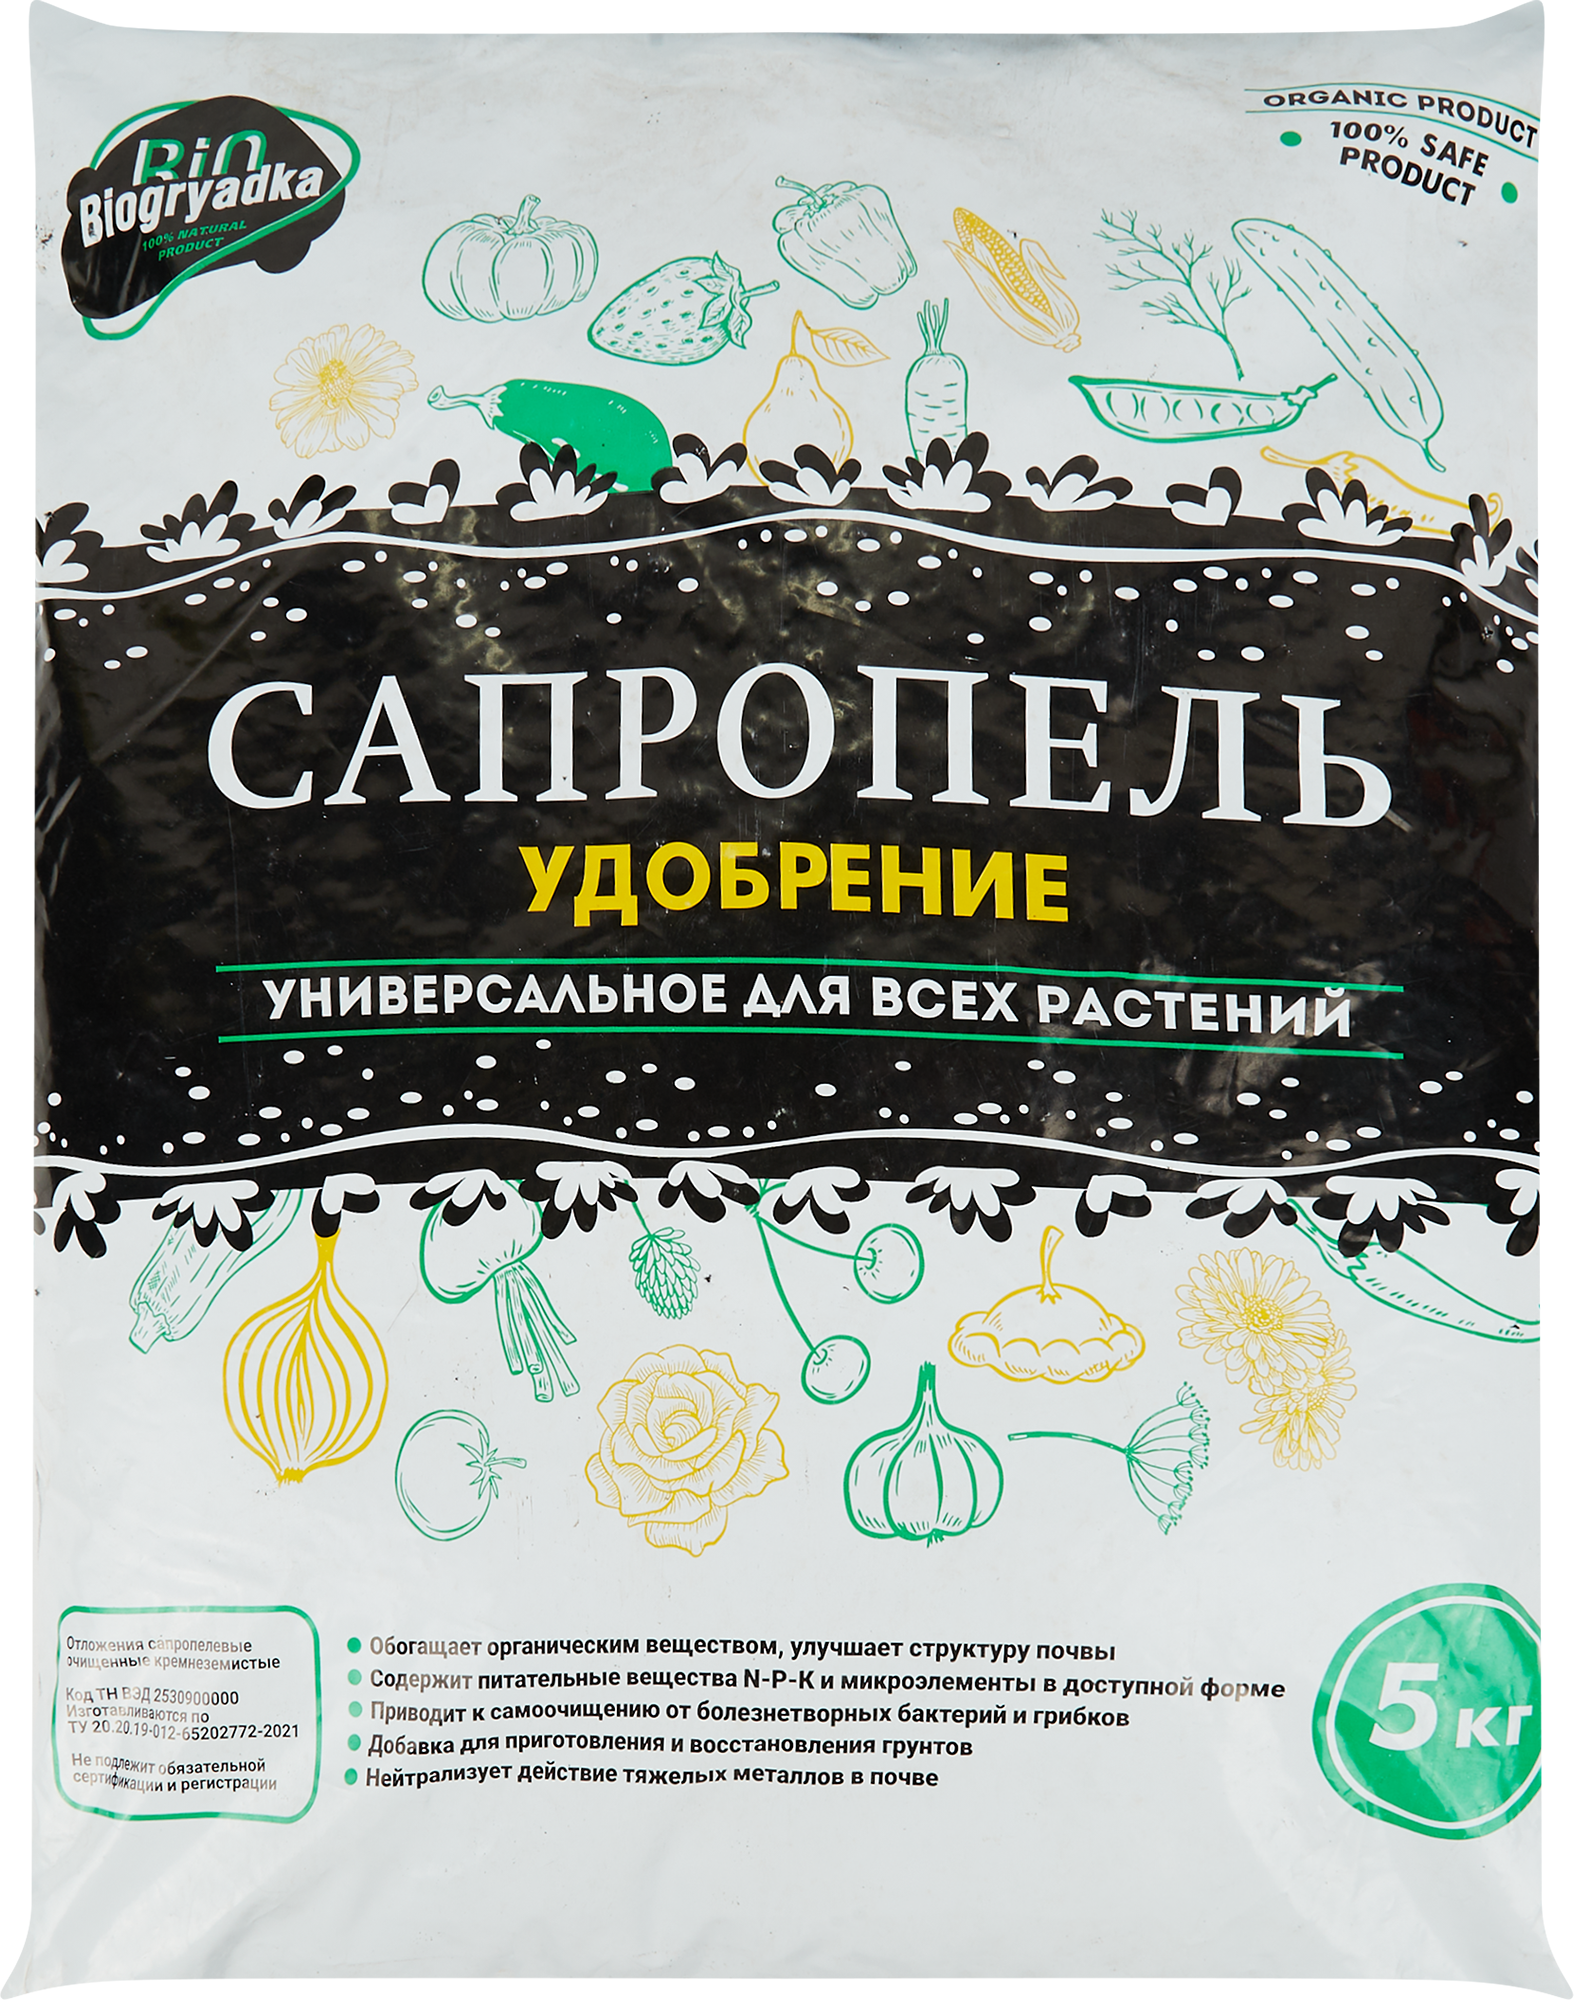 Удобрение Biogryadka Сапропель универсальное 5 кг в Барнауле – купить понизкой цене в интернет-магазине Леруа Мерлен